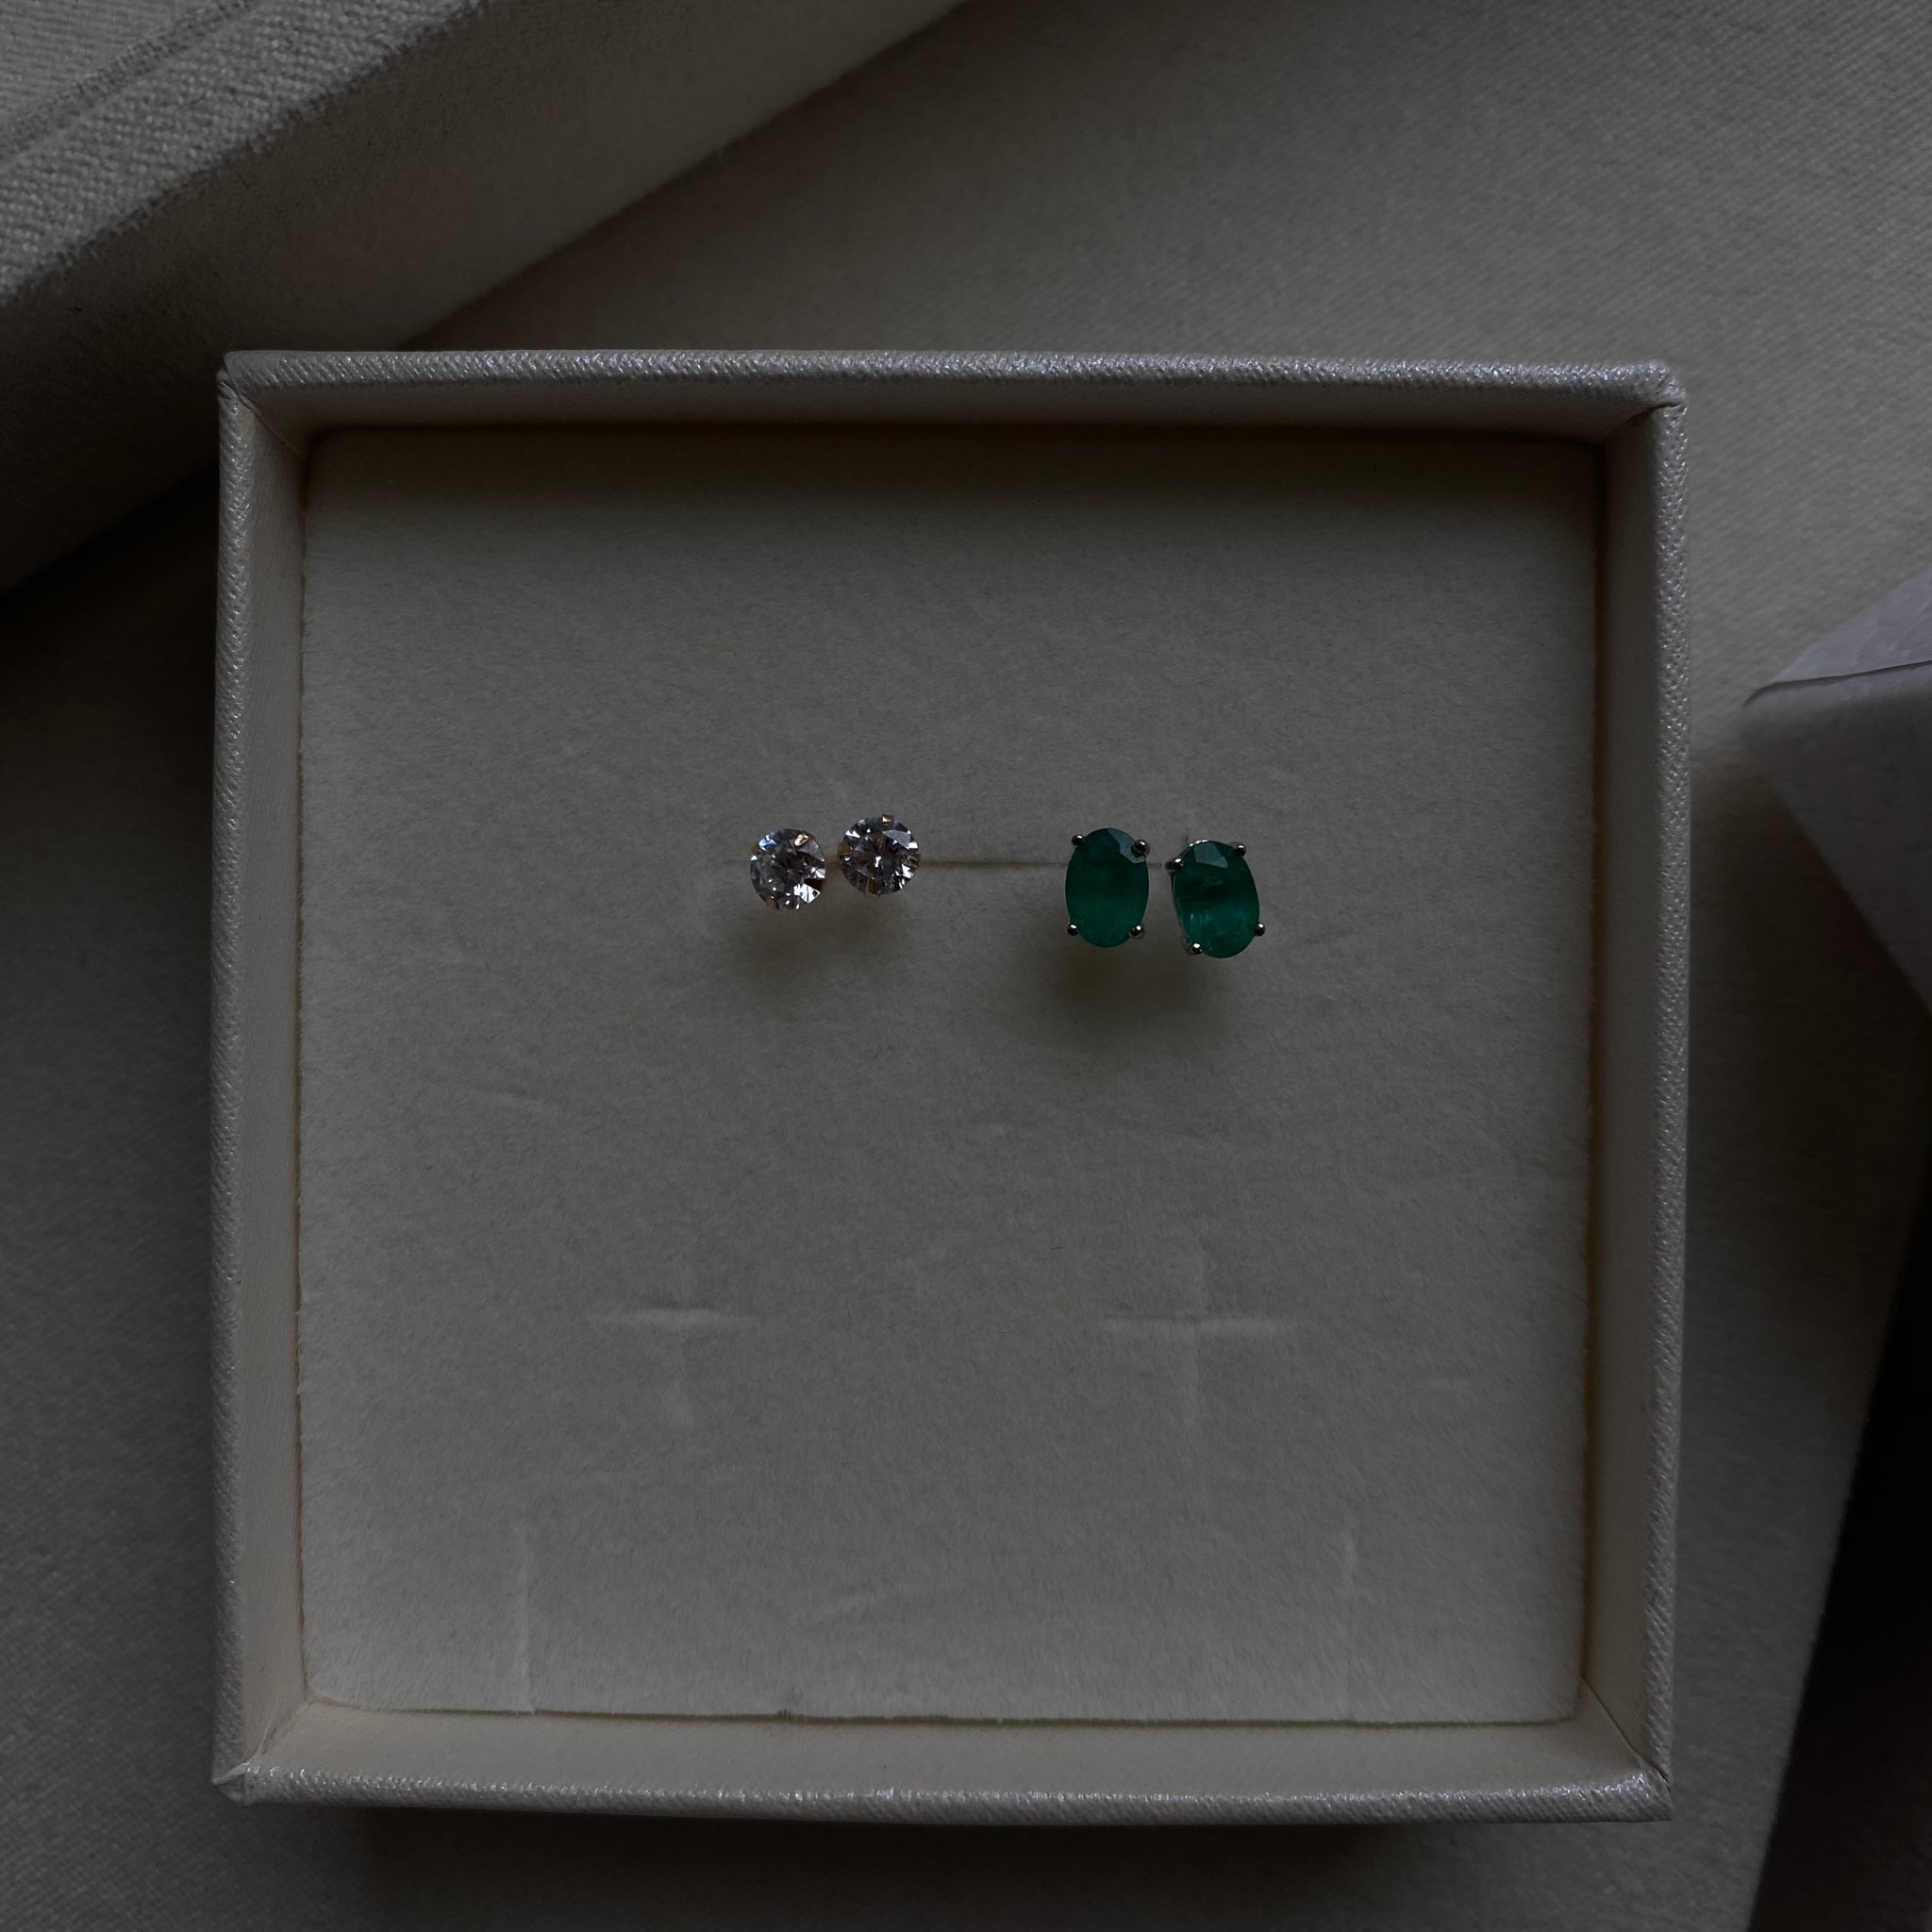 1 Karat Emerald Stud Earrings